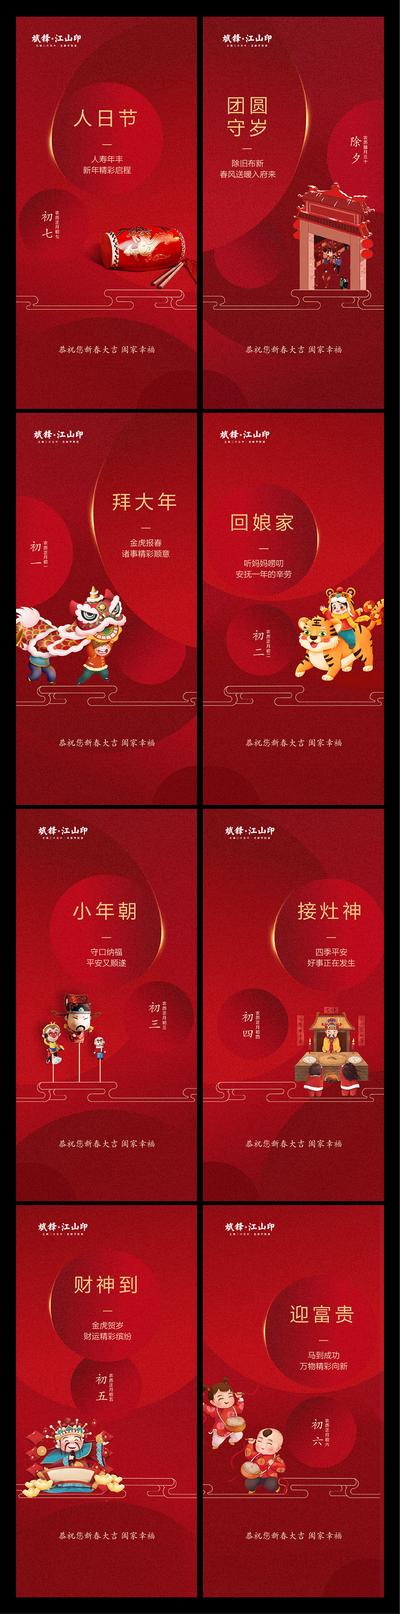 【南门网】广告 海报 节日 新年 春节 大年初一 年俗 系列